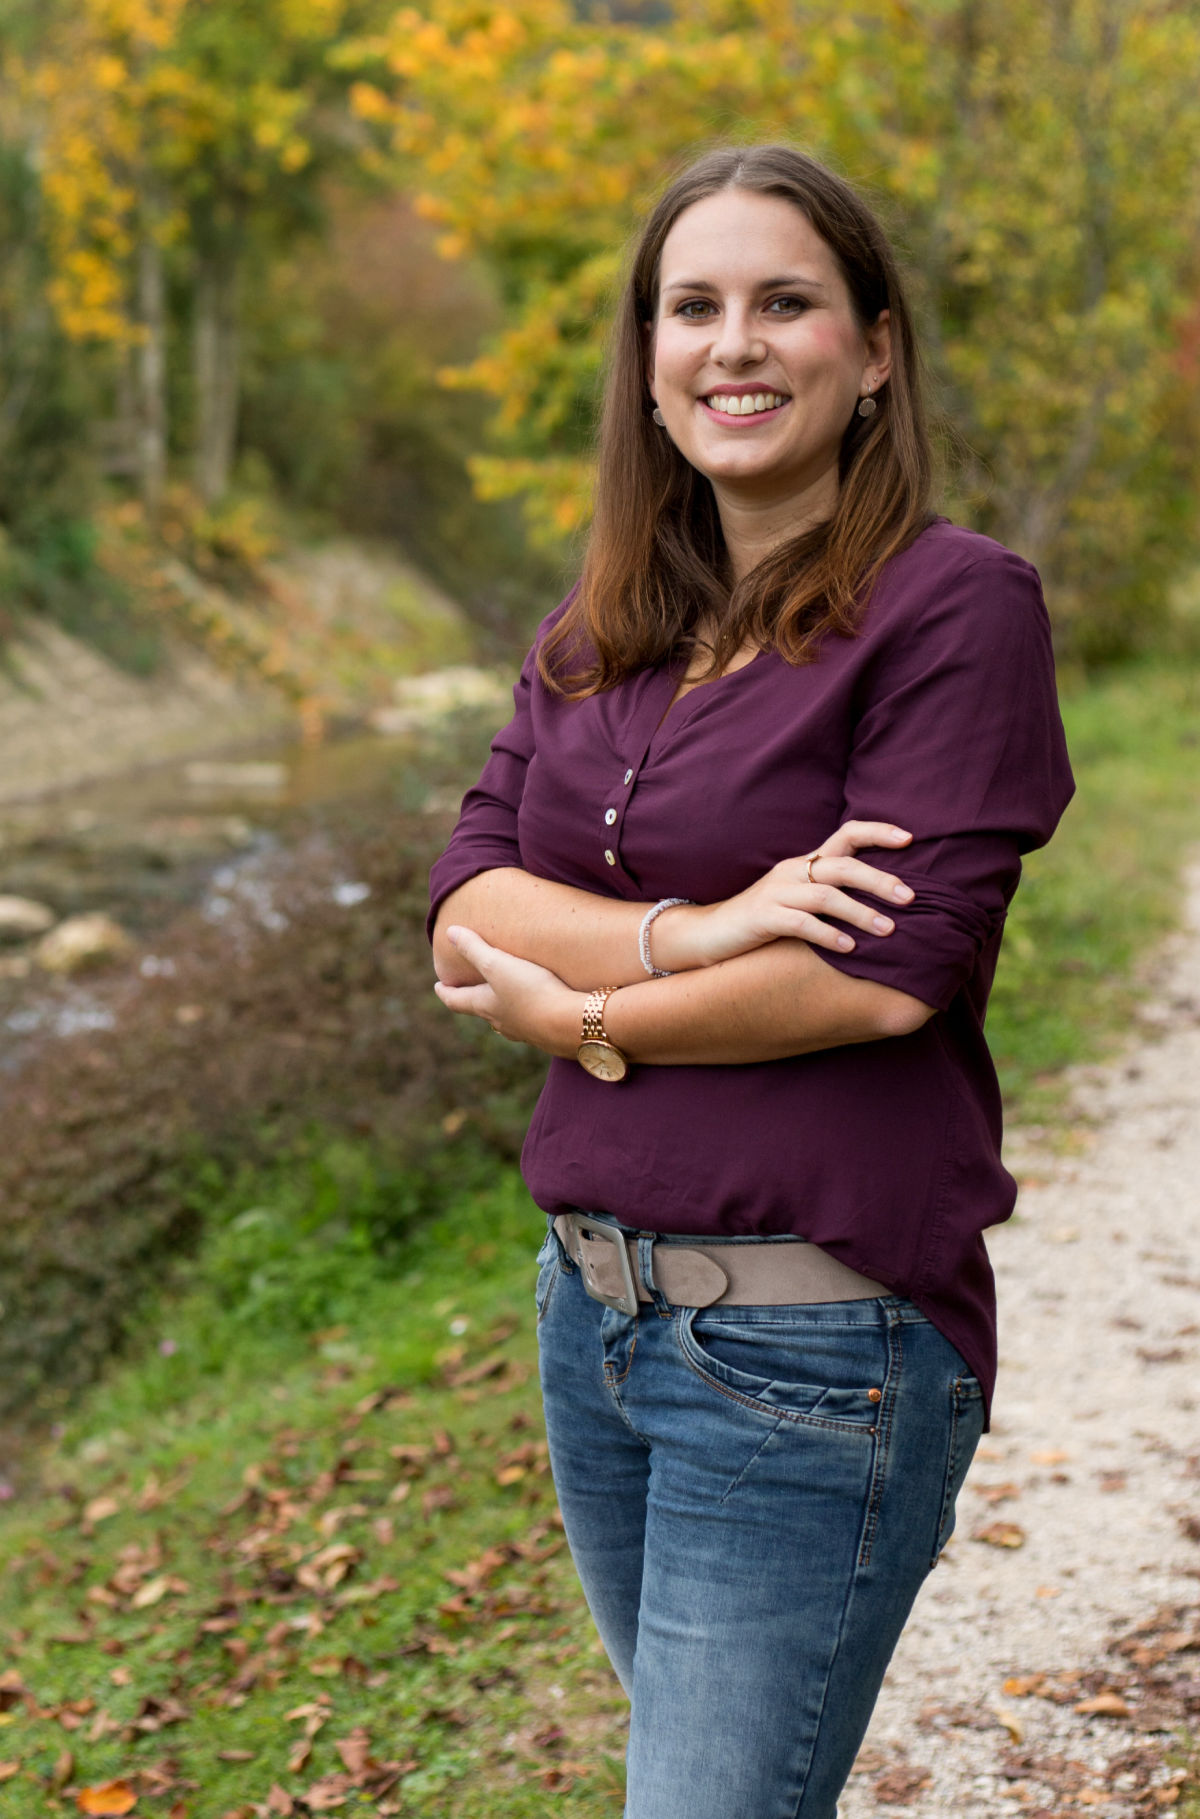 Bürgermeister-Kandidatin Sabrina Stutz